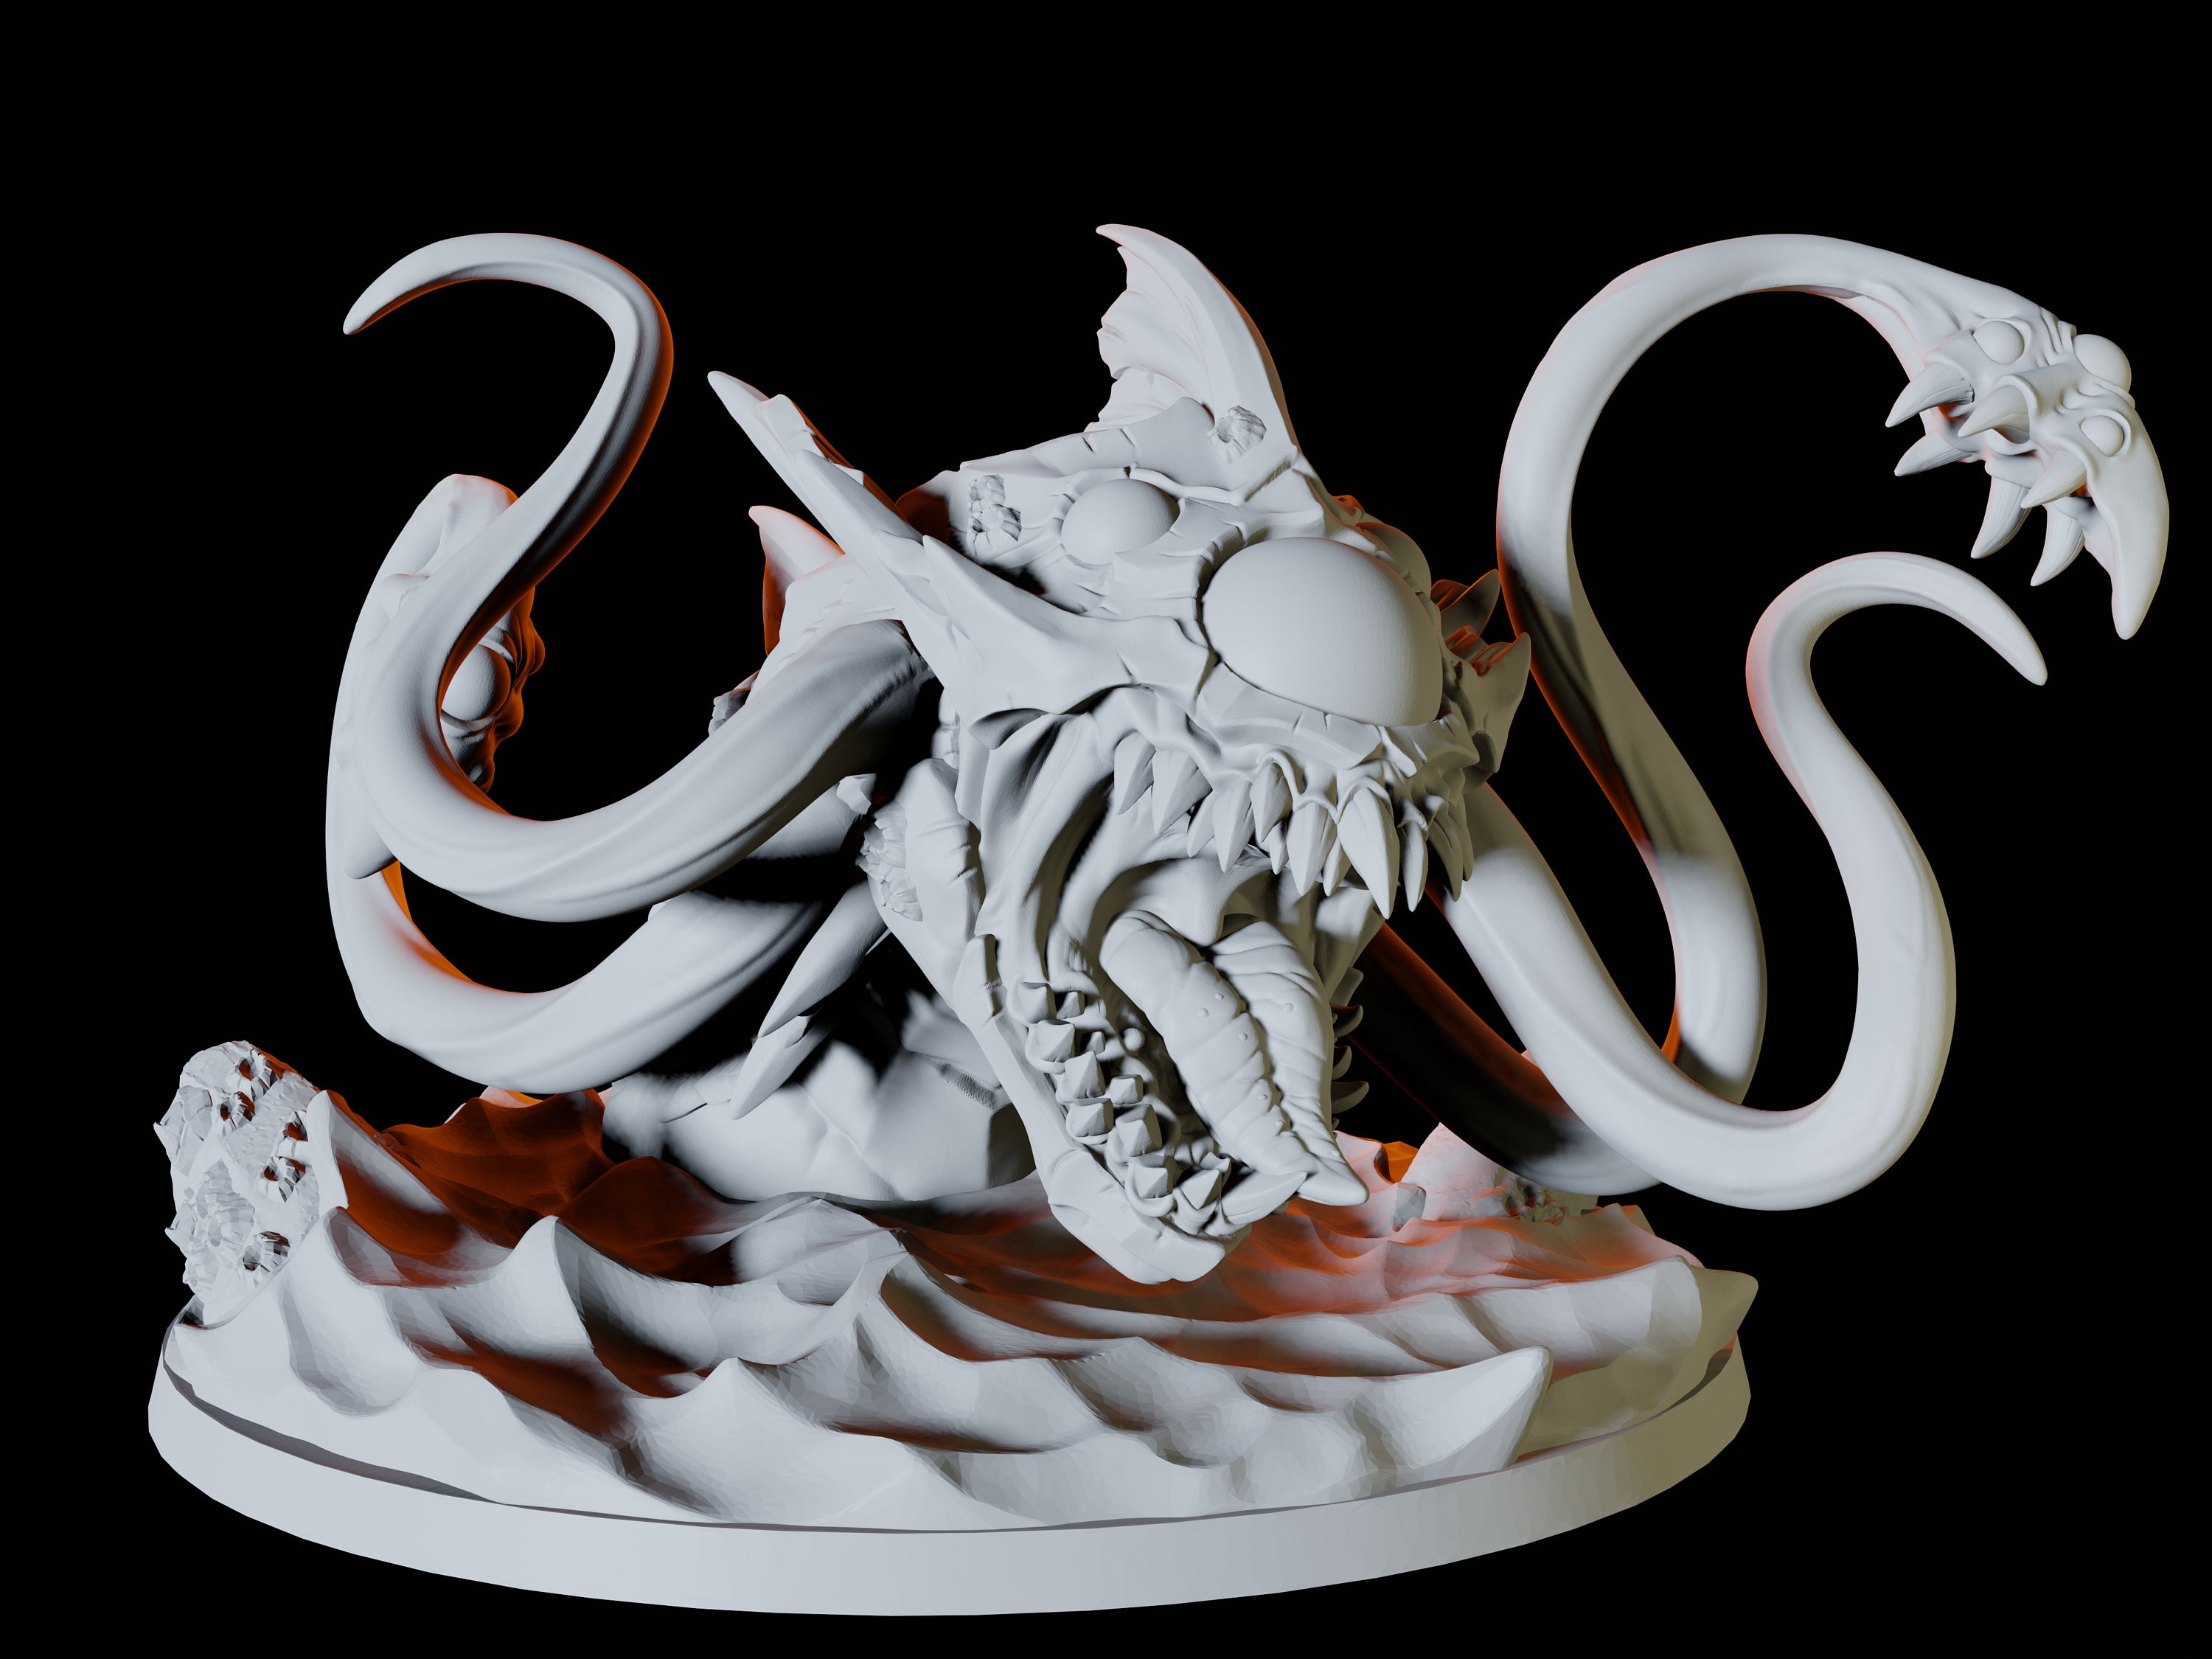 Aboleth or Kraken Water Monster Miniature for D&D Dungeons | Etsy UK